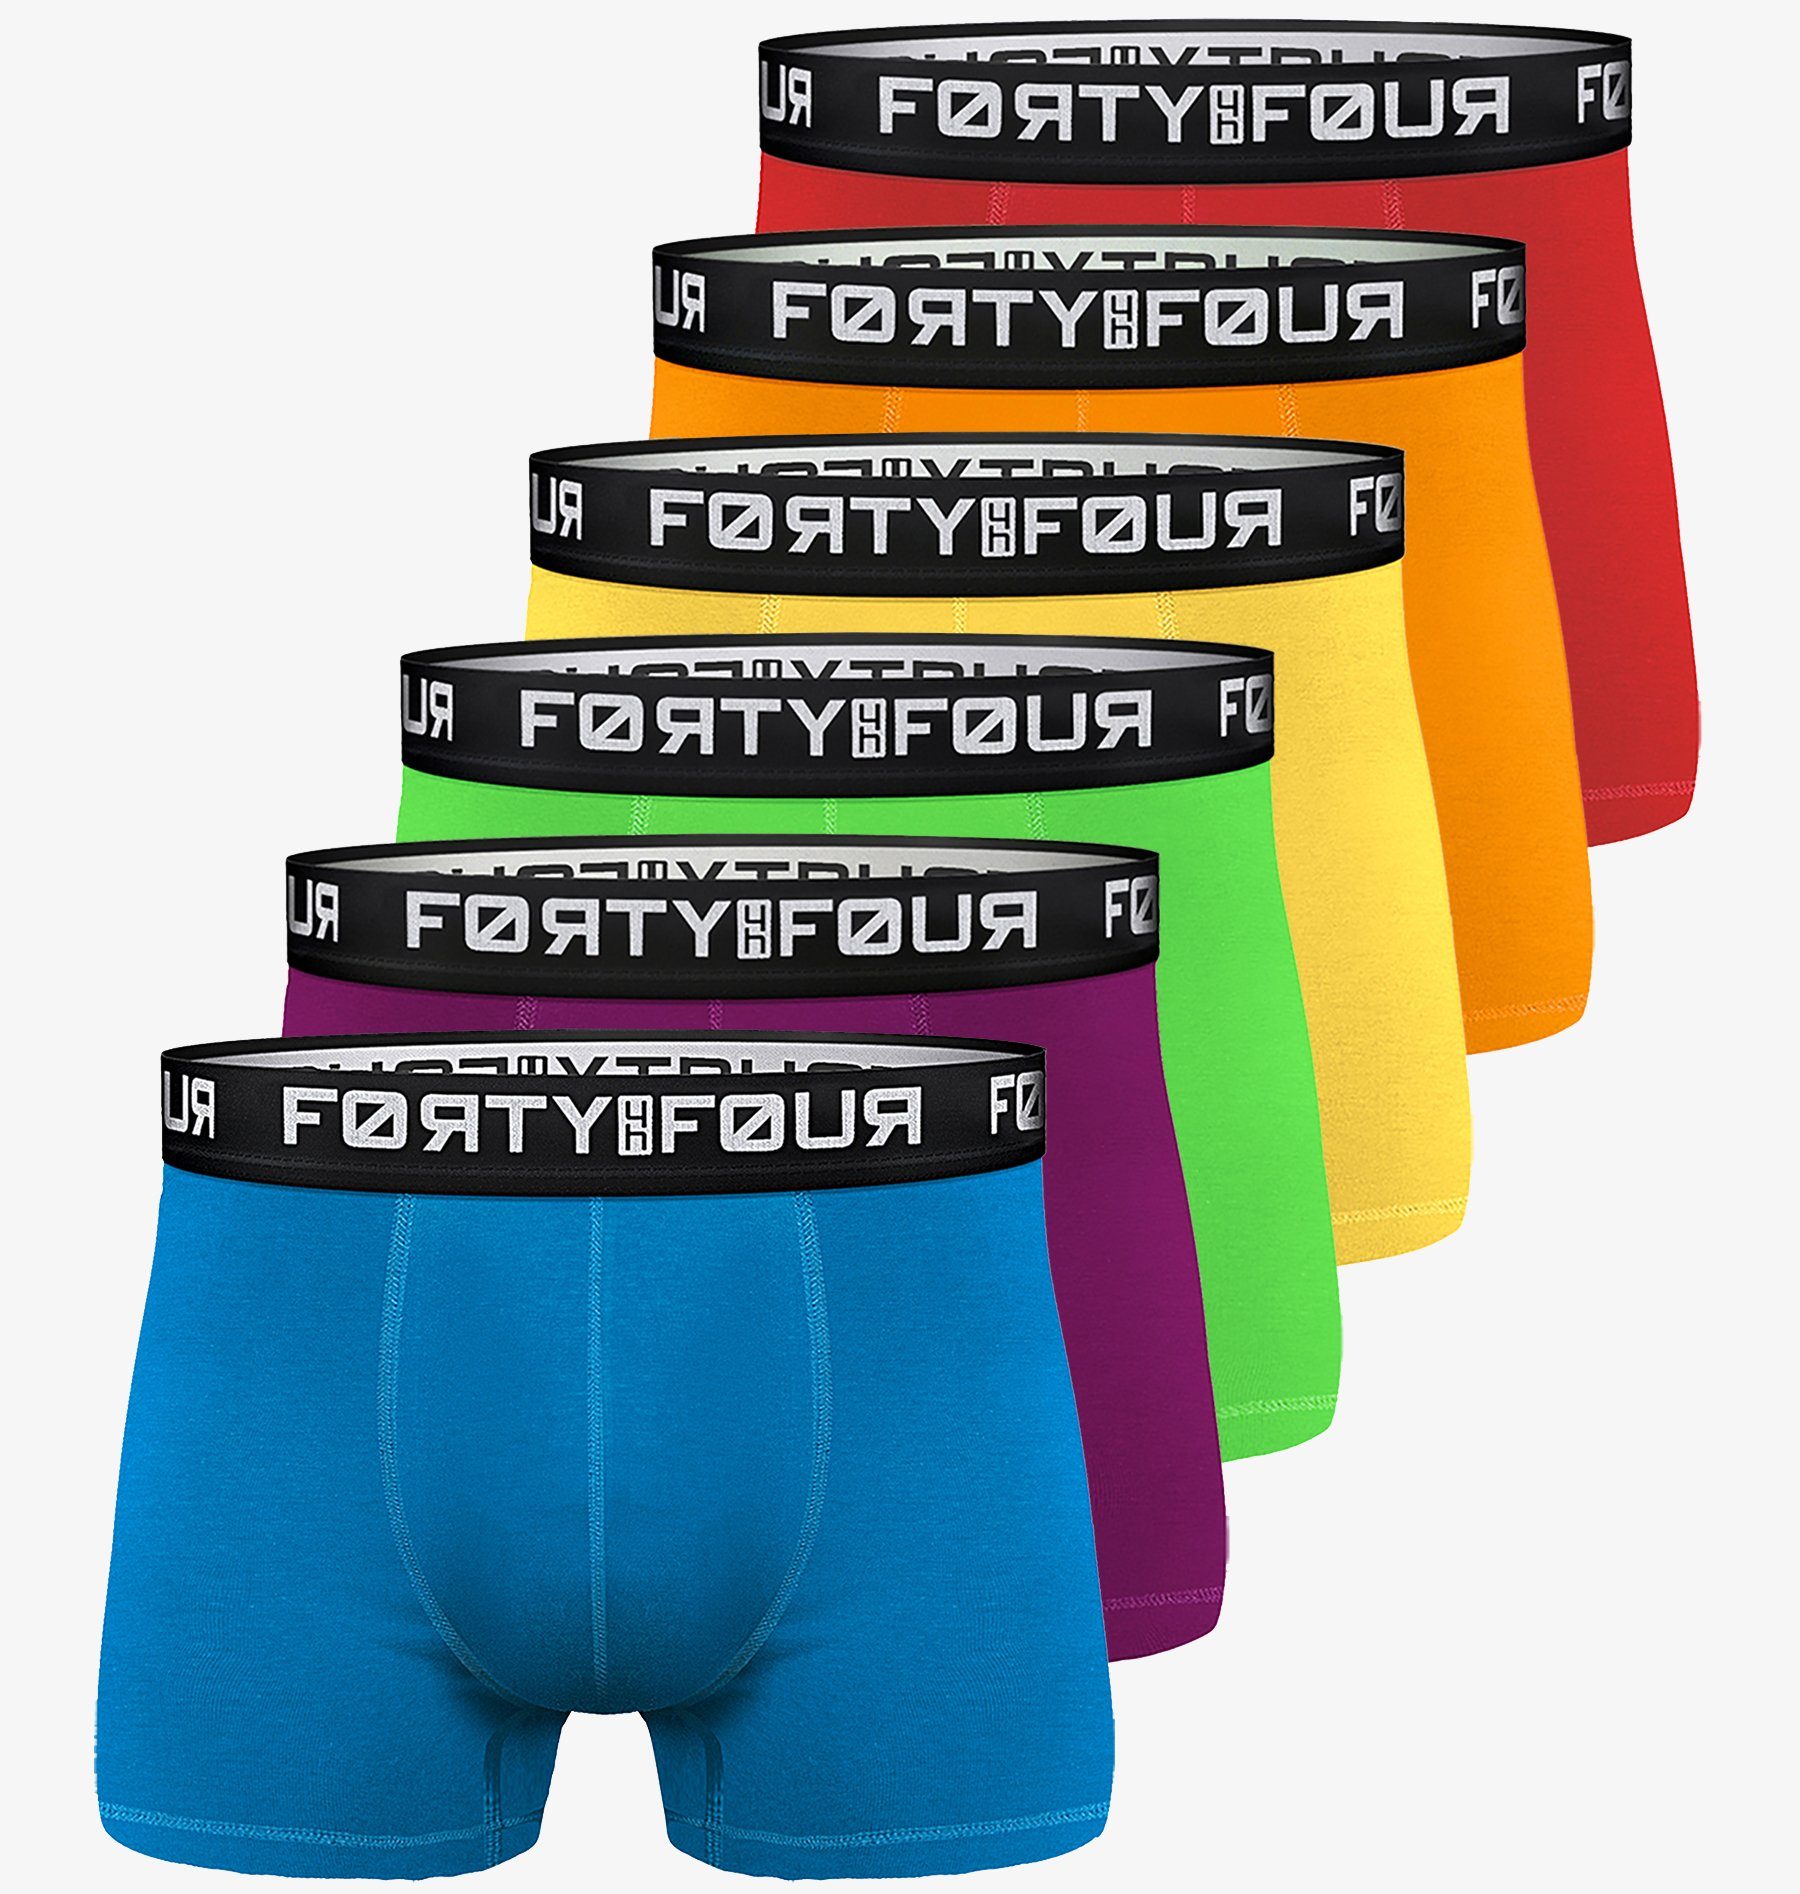 - Pack) 6er Baumwolle Männer FortyFour (Vorteilspack, S 706c-bunt Unterhosen Herren 7XL Passform Premium Qualität Boxershorts perfekte